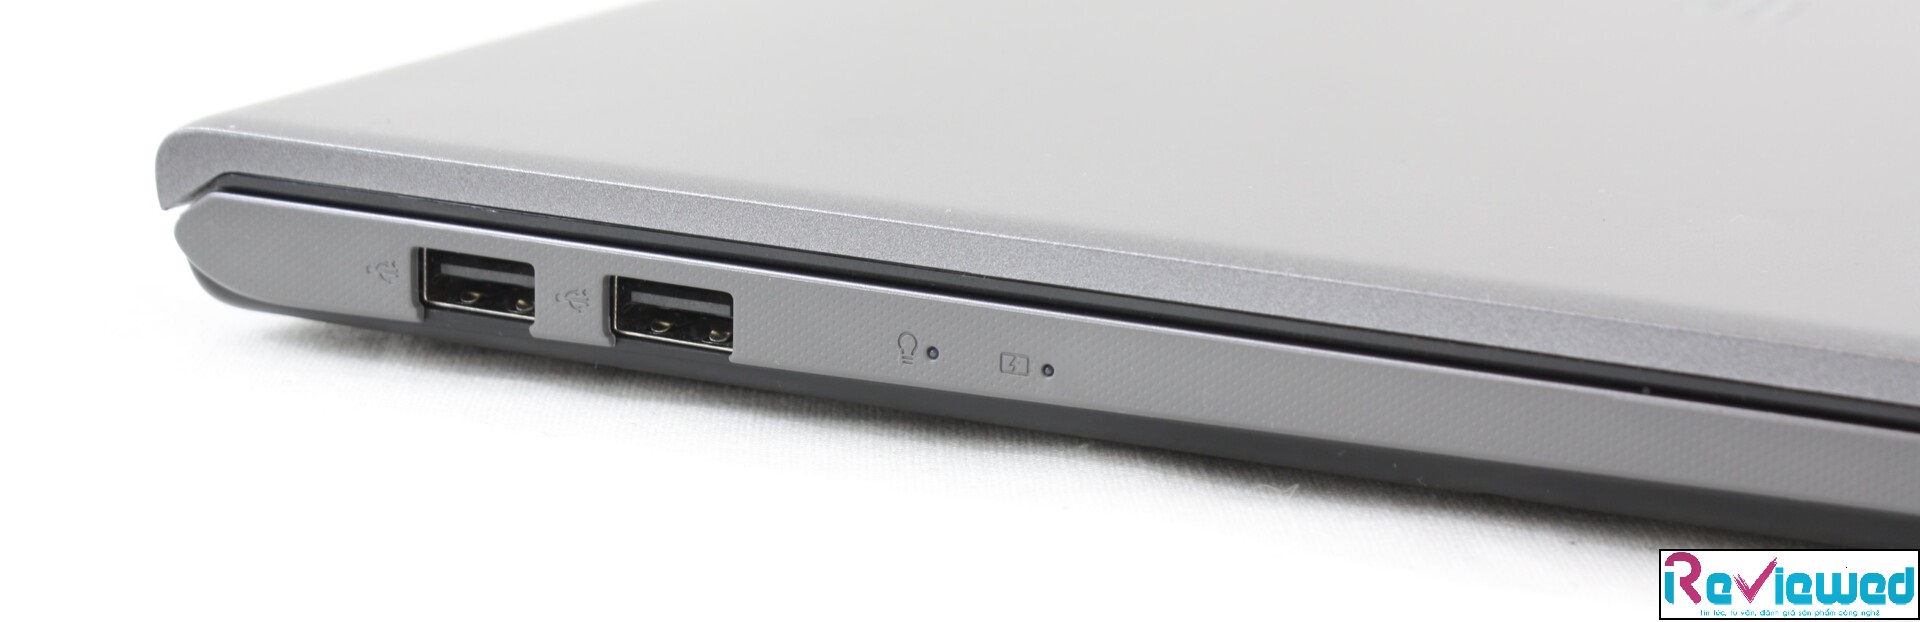 Đánh giá Asus Vivobook 15 F512DA: Notebook giá rẻ, hiệu năng cao, Chuyên trang tư vấn Laptop